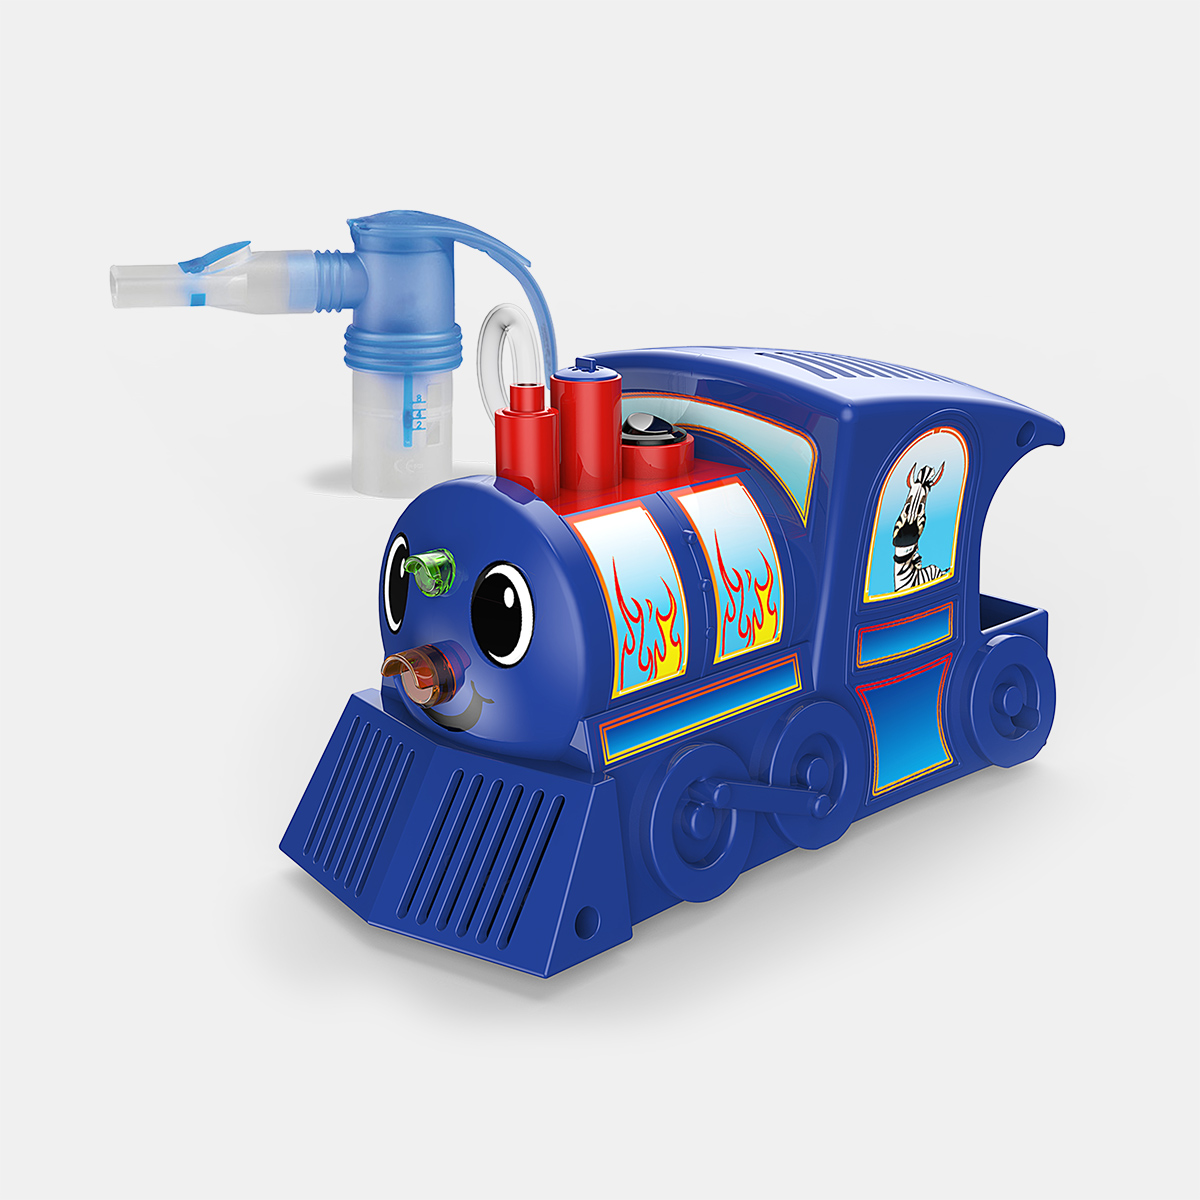 Nebulizator kompresorowy Thomas Cartoon Baby Nebulizator dla dzieci